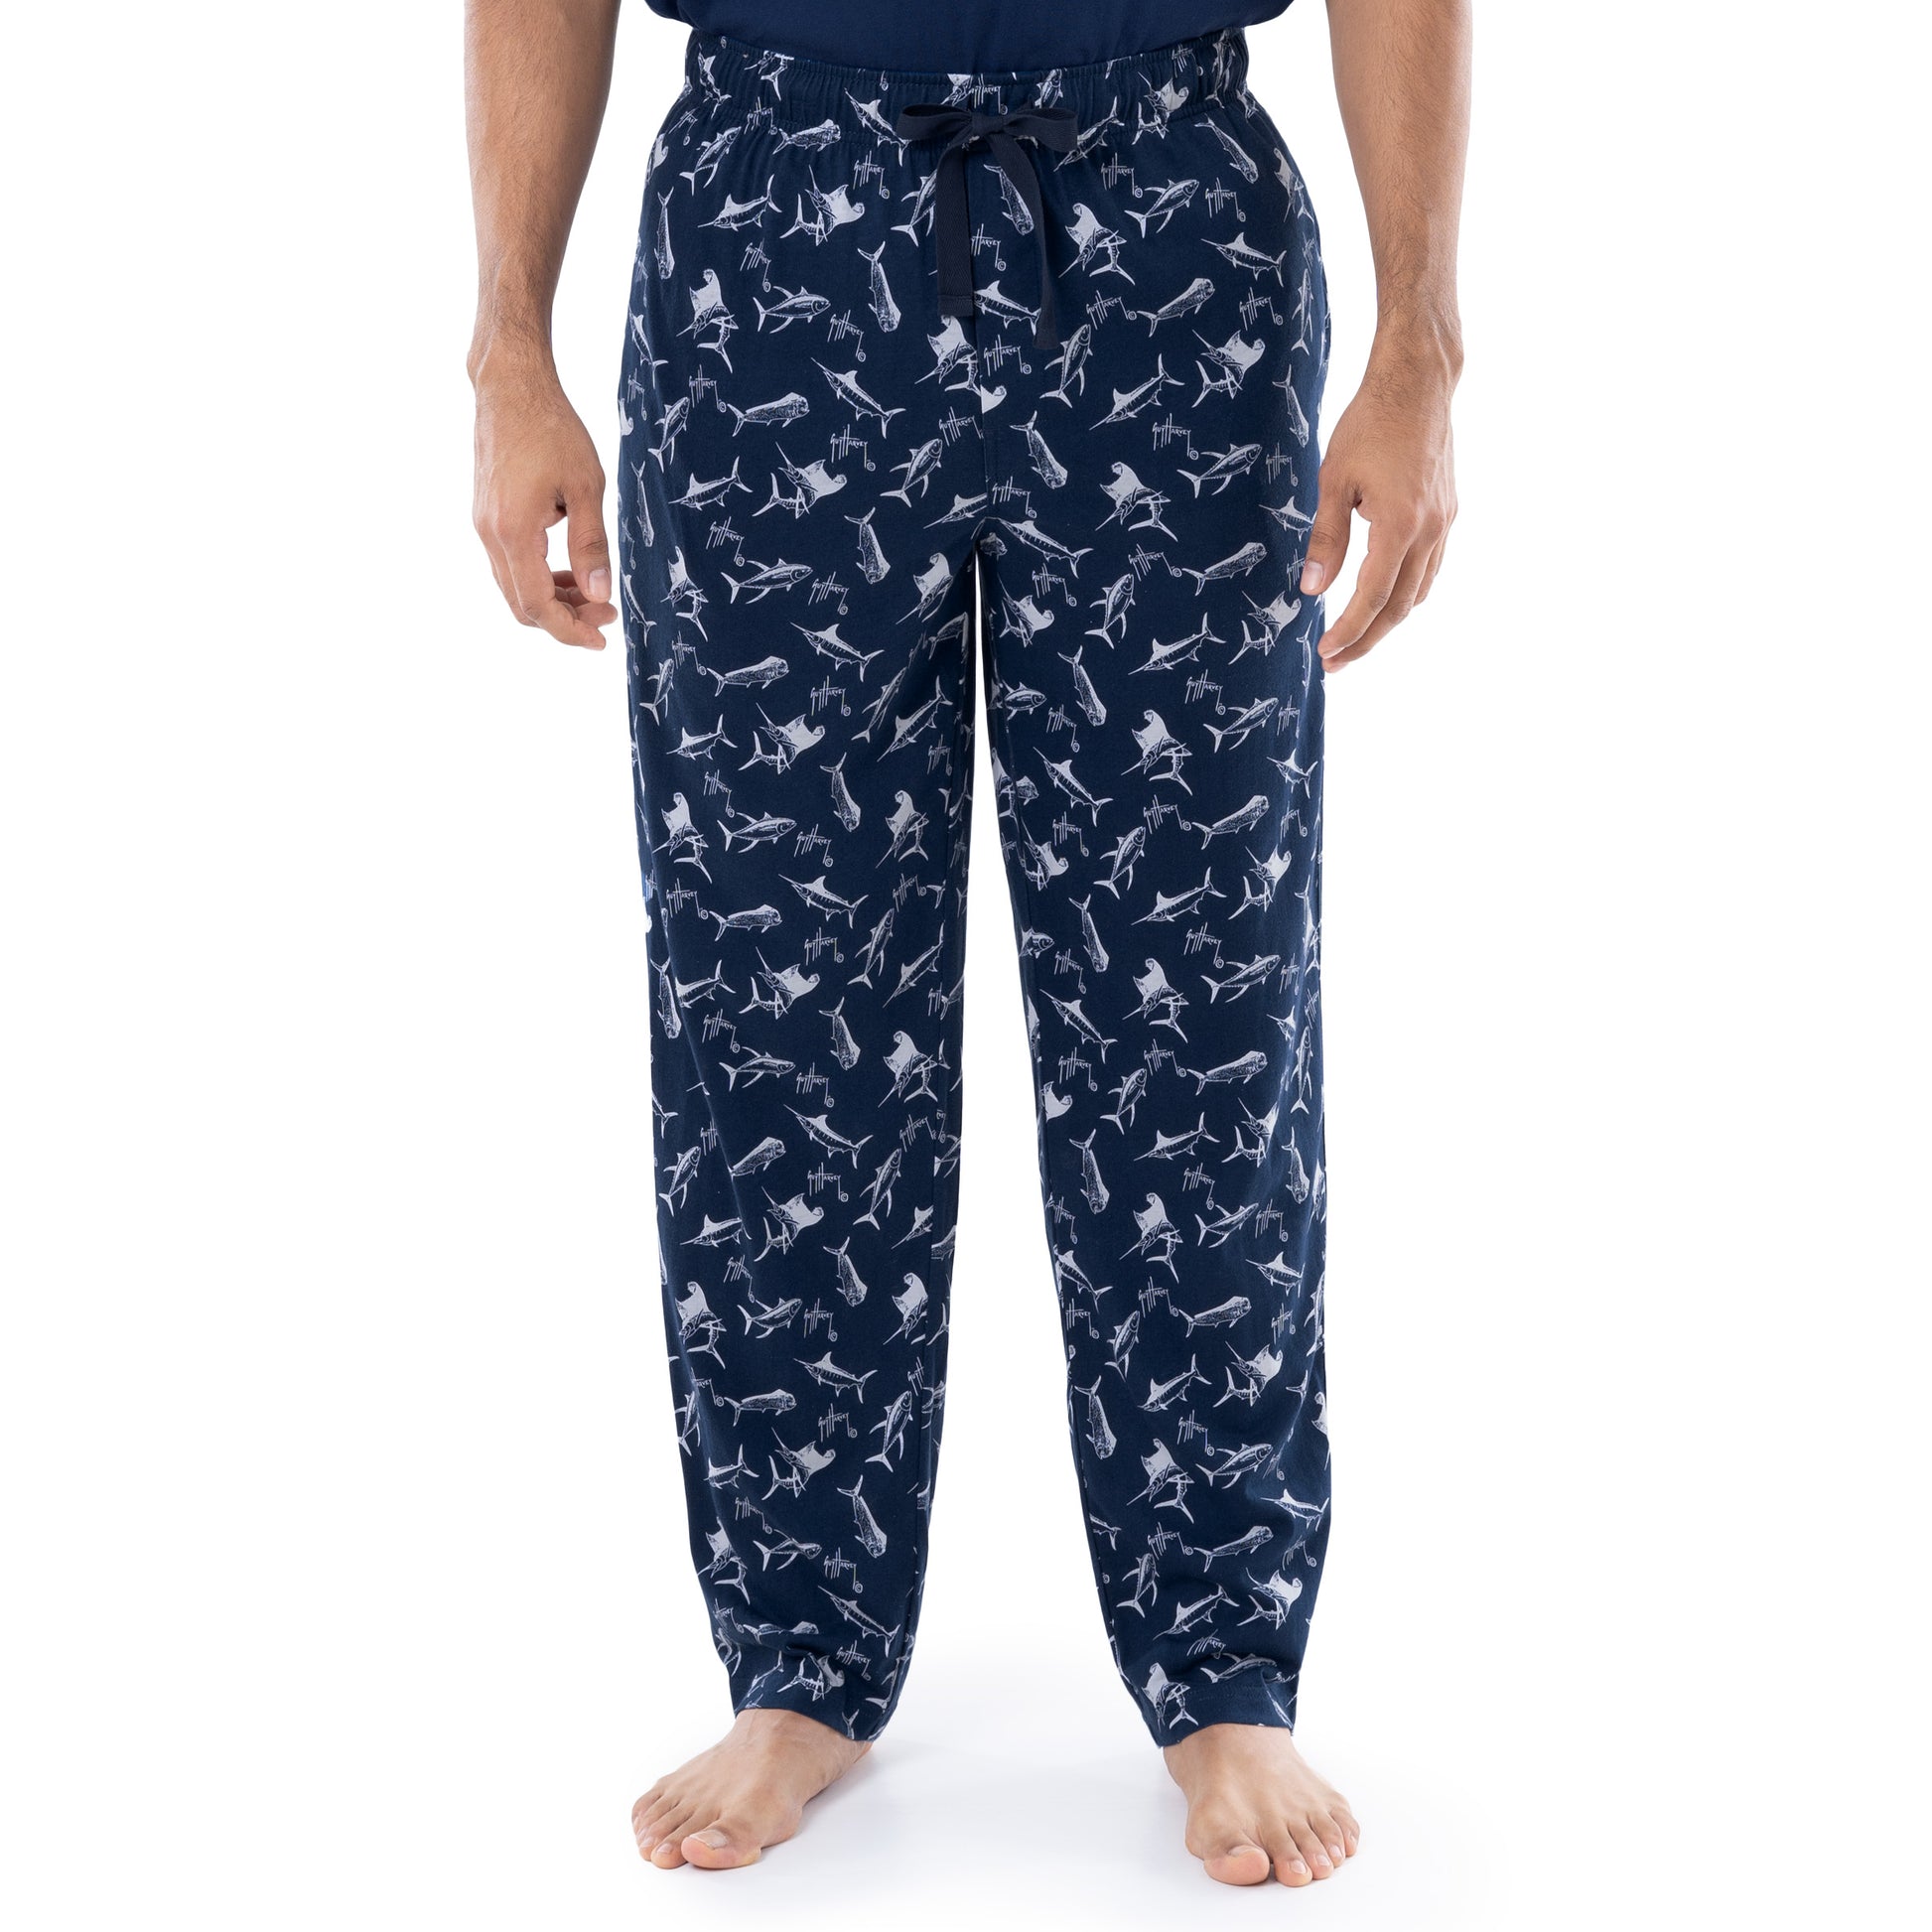 Men's Game Fish Knit Sleep Pant + T-Shirt Bundle View 3